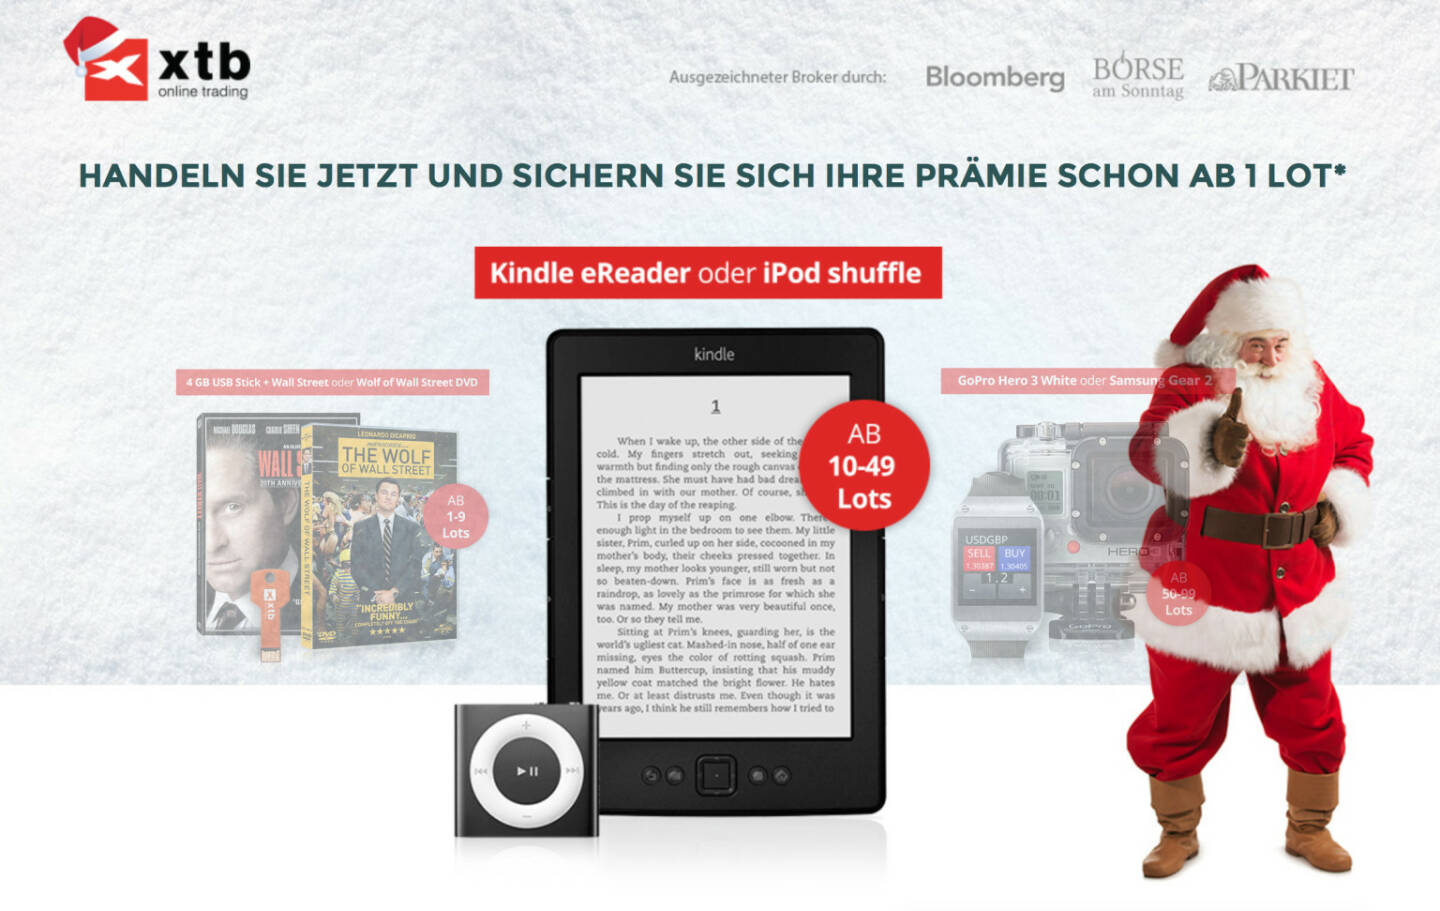 Unter http://winter.xtb.de hat XTB eine Zwei Fliegen mit einem Schlag - Weihnachtsaktion für Trader laufen